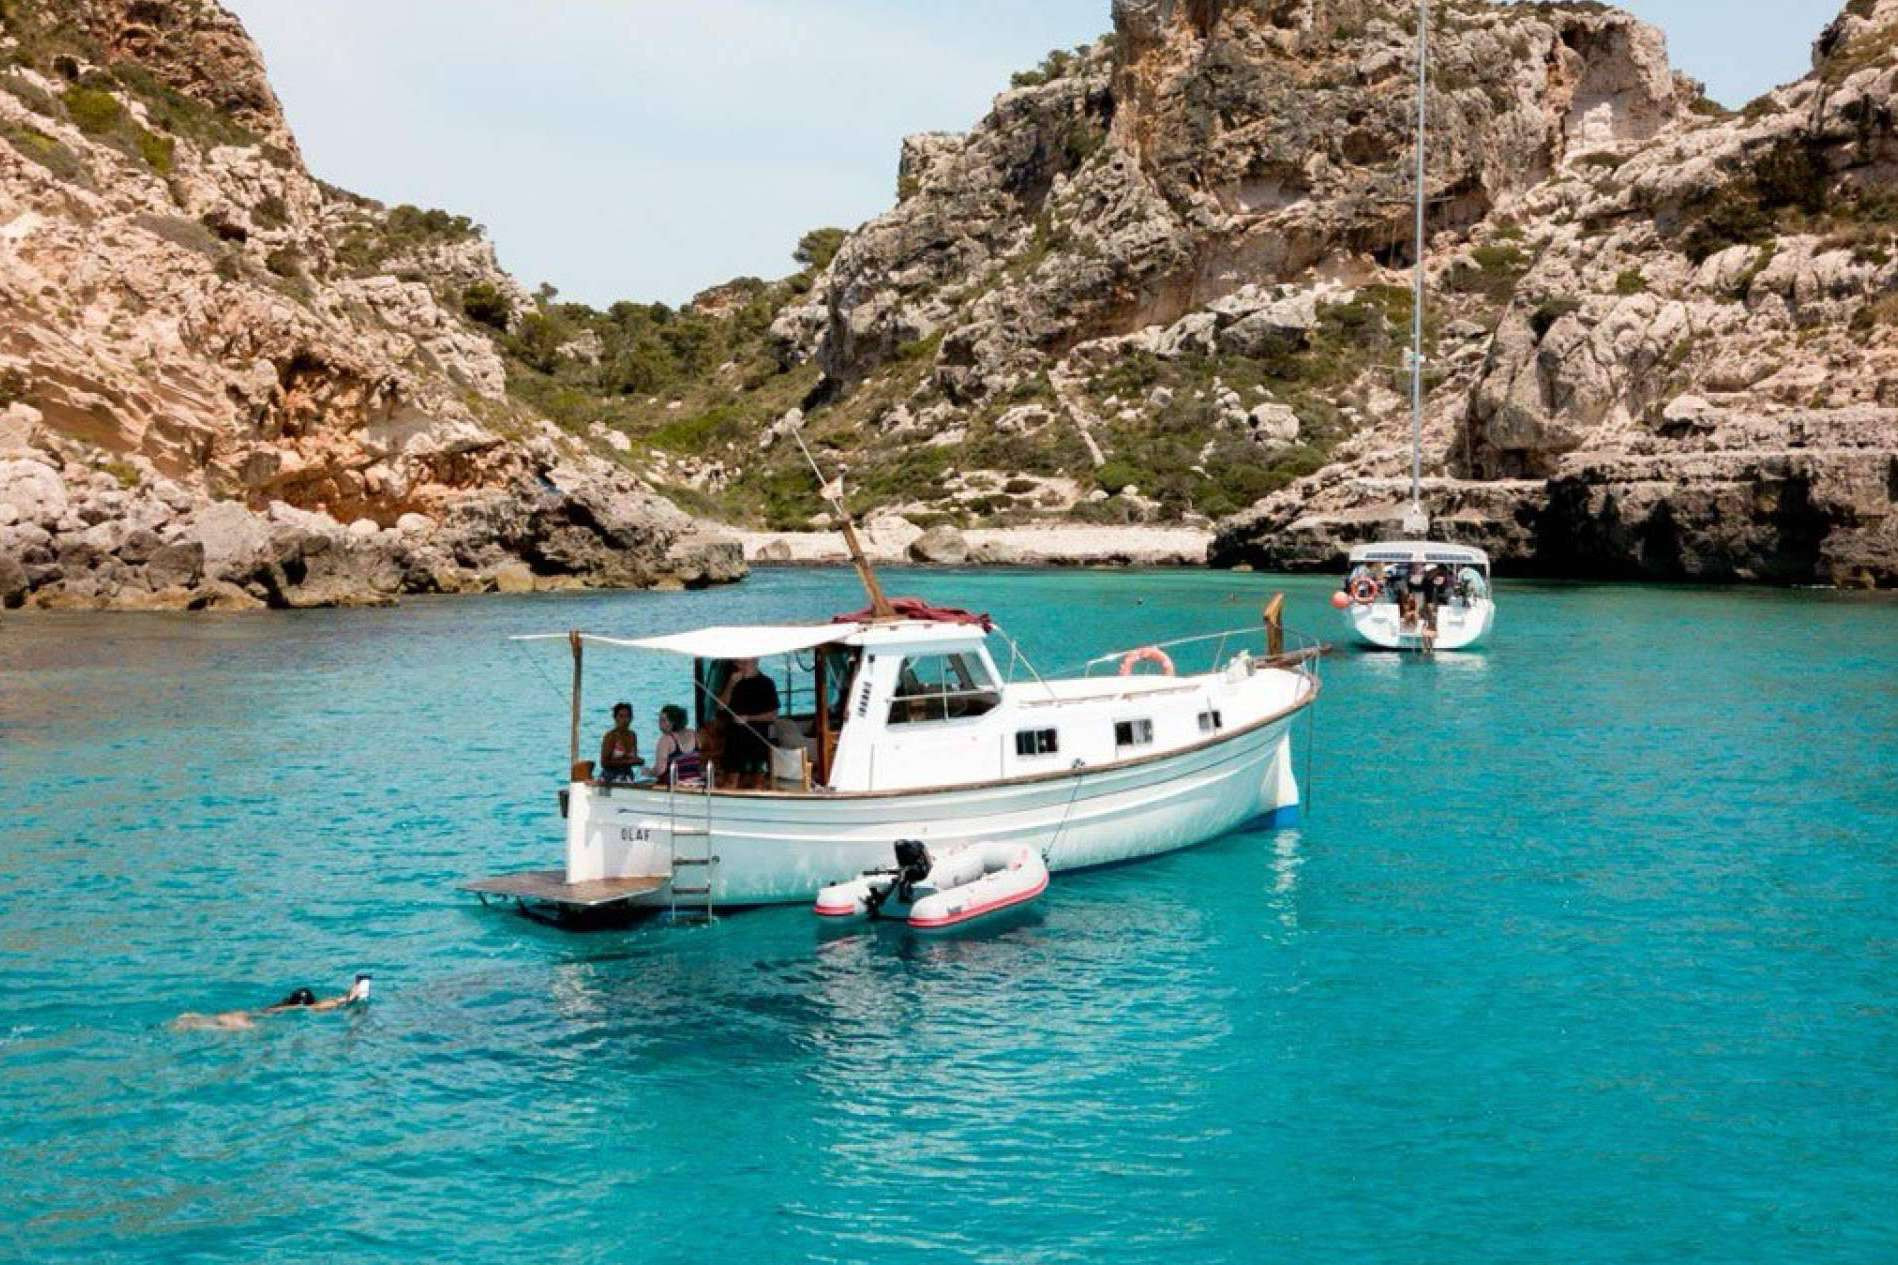  Ola Menorca, la plataforma de amigos para quienes desean visitar la isla de Menorca en verano 